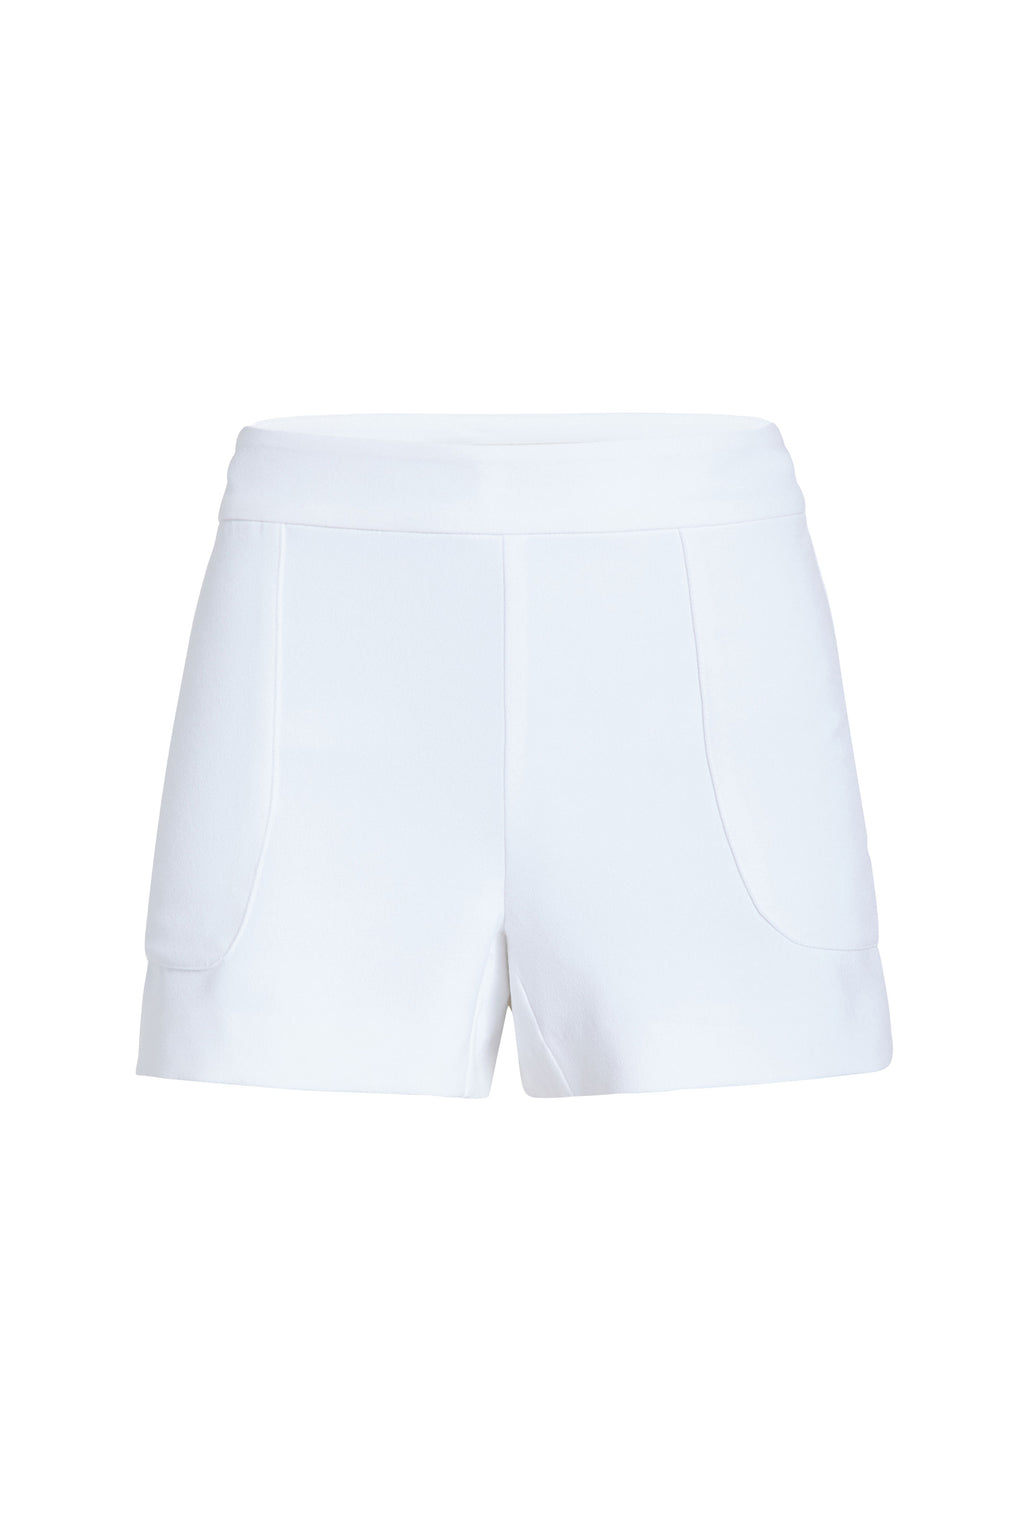 White shorts 